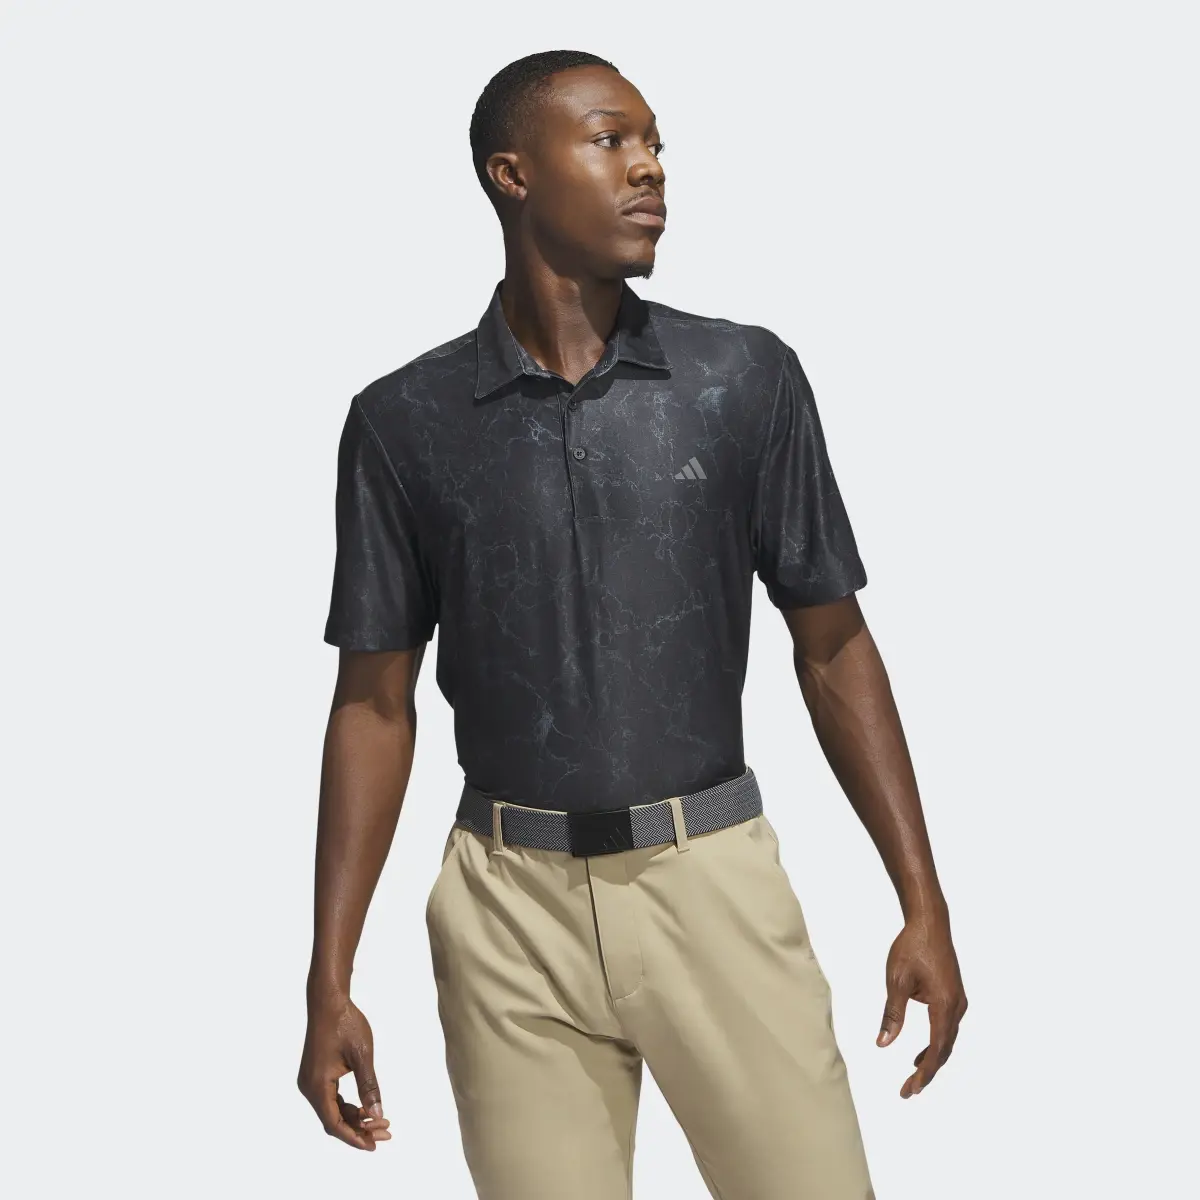 Adidas Ultimate365 Print Golf Polo Shirt. 2